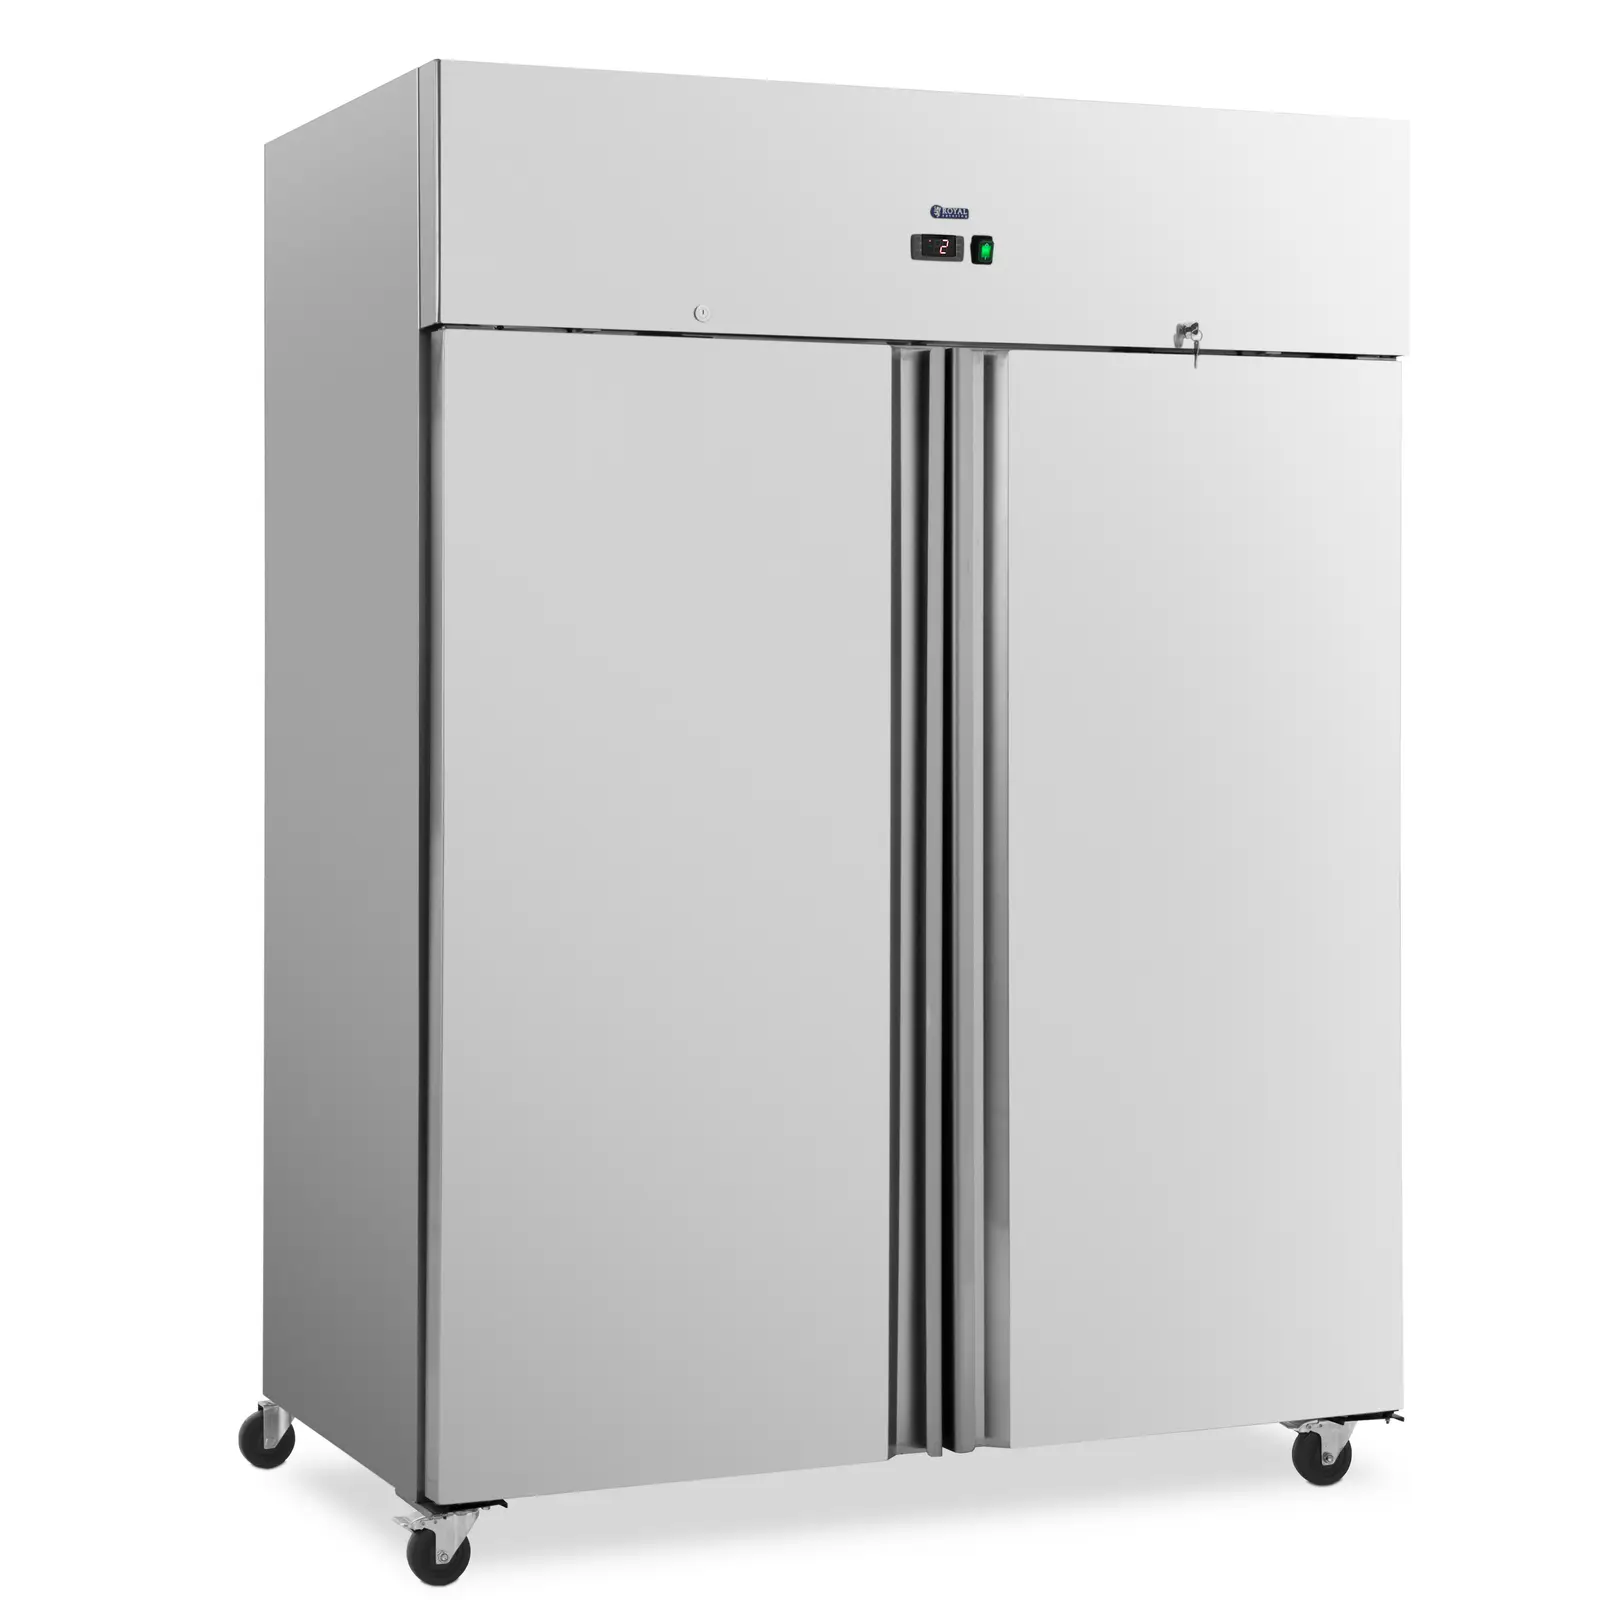 Ipari hűtőszekrény - 1001 l - rozsdamentes acél - 2 ajtó - 4 kerék - zárható - Royal Catering